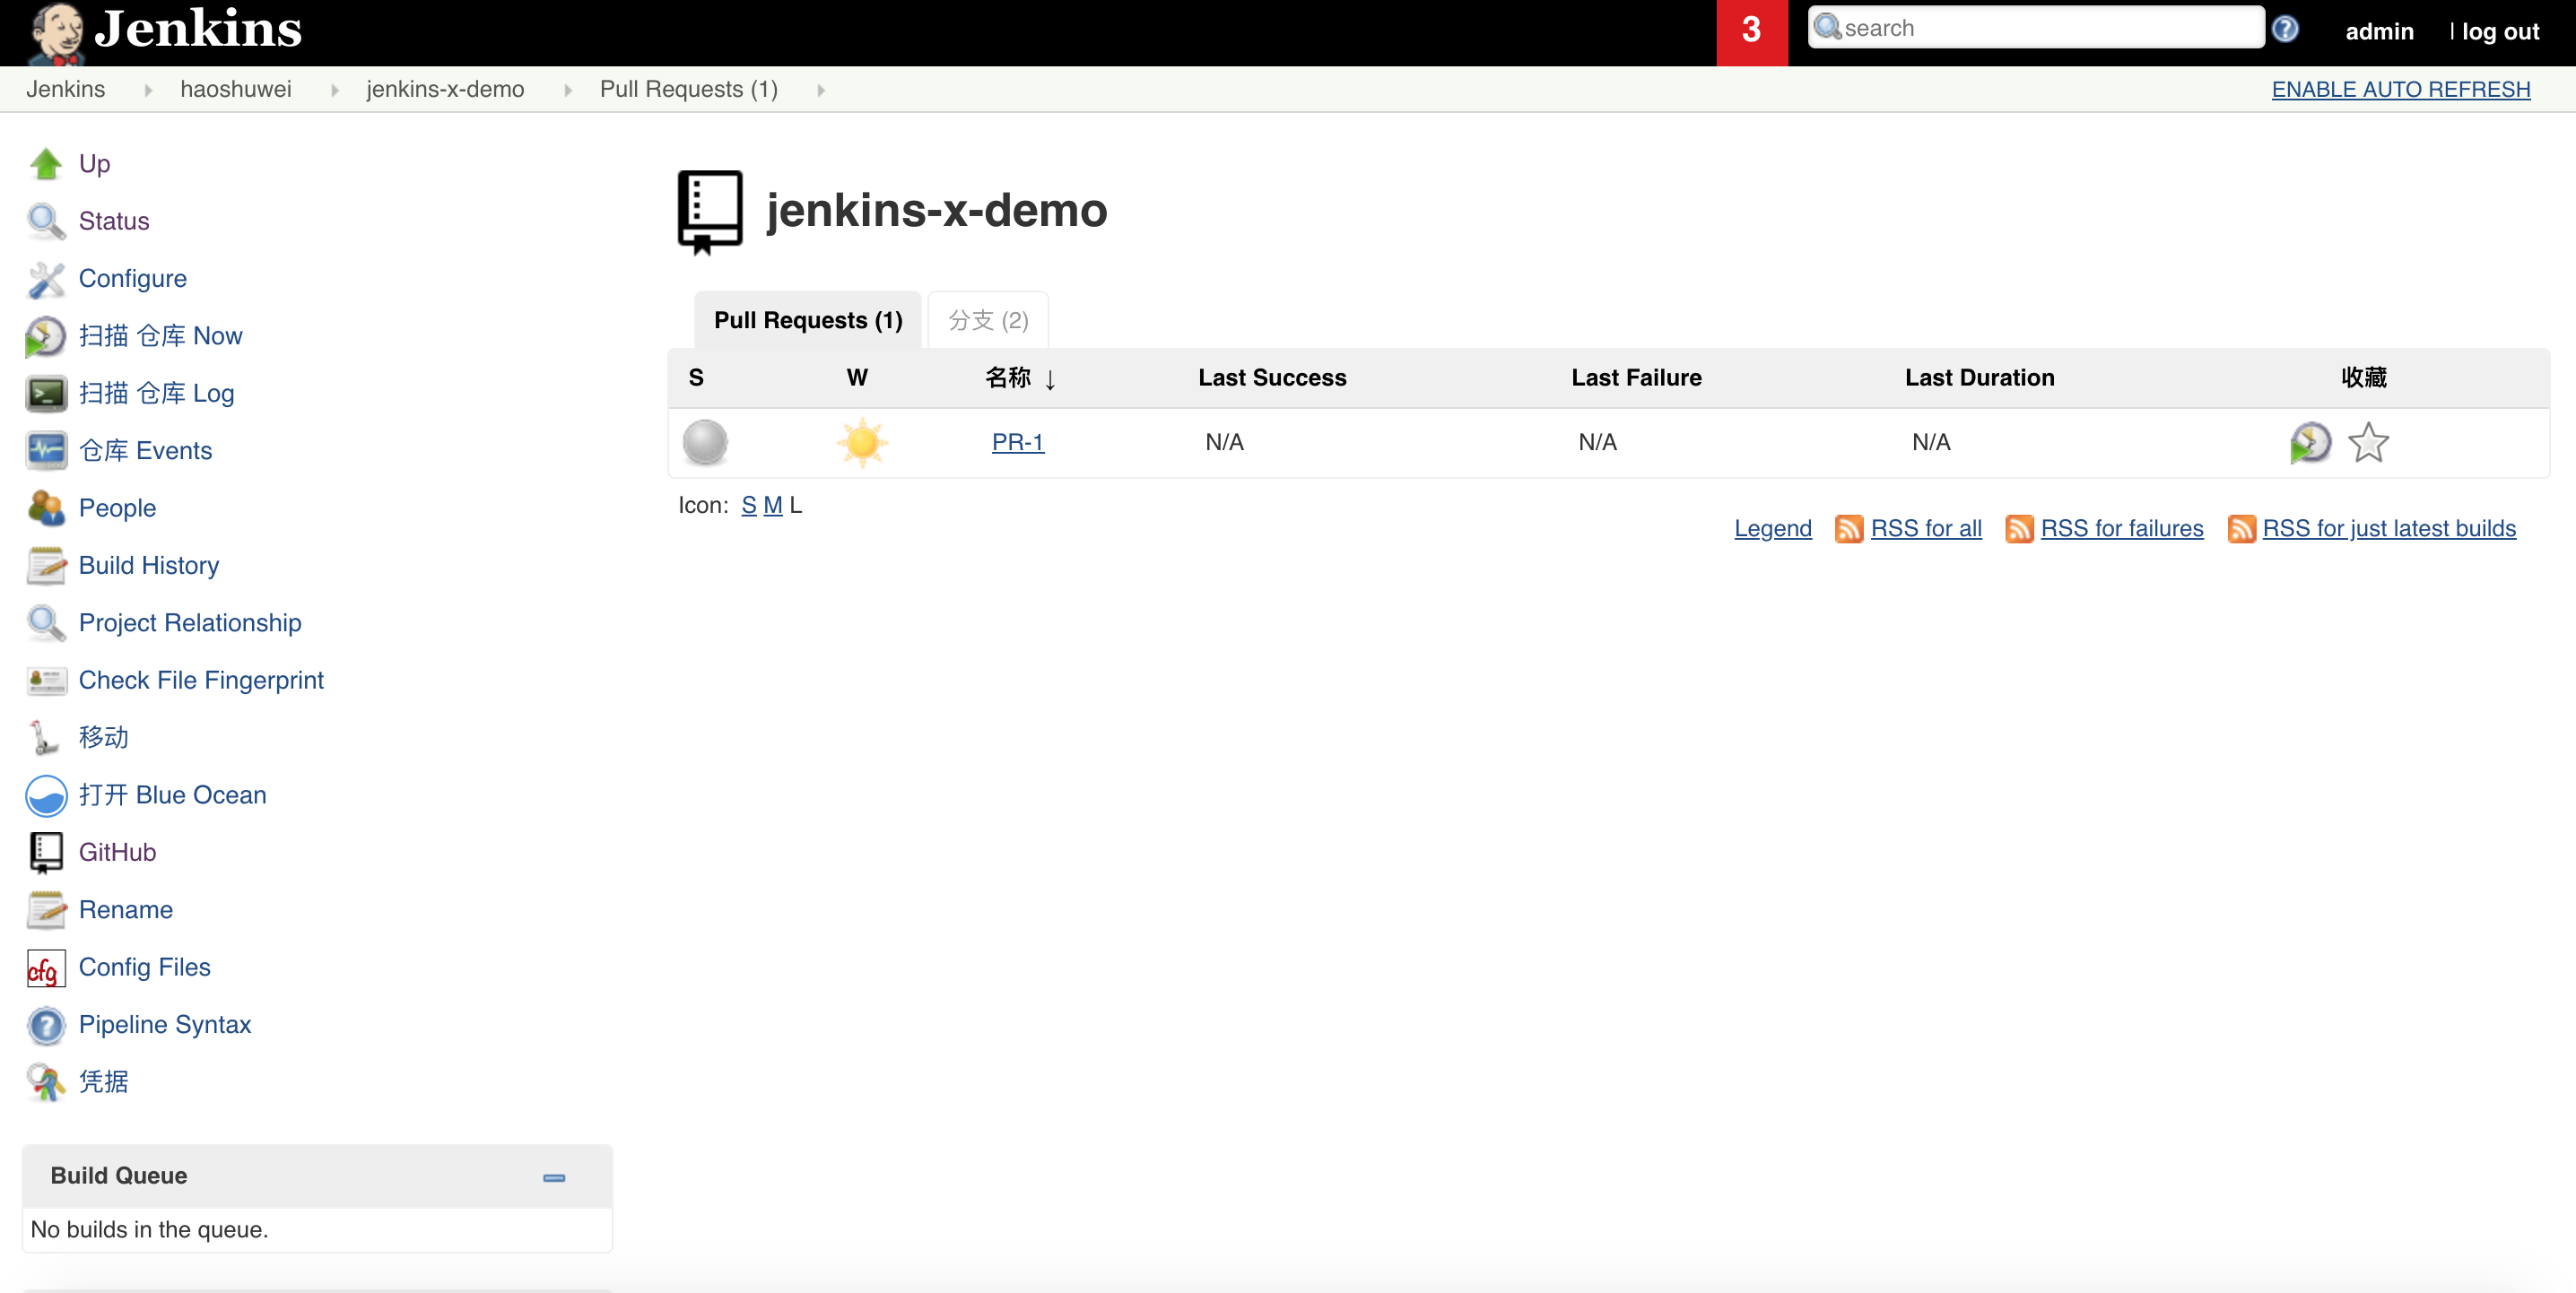 15分钟在阿里云Kubernetes服务上快速建立Jenkins X Platform并运用GitOps管理应用发布 